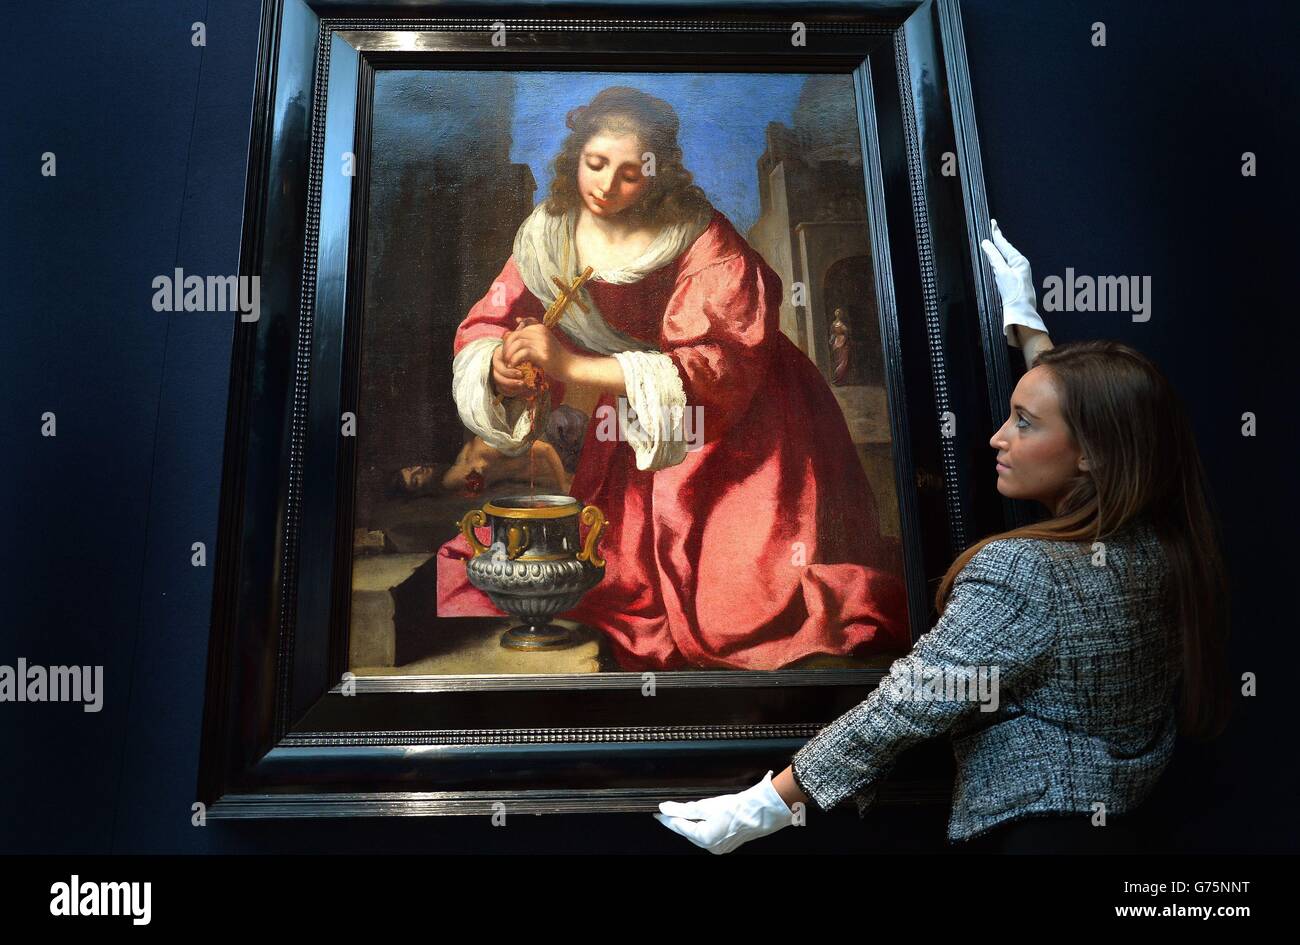 Un membre du personnel de Christie regarde un portrait de Saint Praxedis par Johannes Vermeer qui sera mis aux enchères dans le cadre de l'ancien Maître et amp; vente de peintures britanniques à Christie's à Londres. Banque D'Images